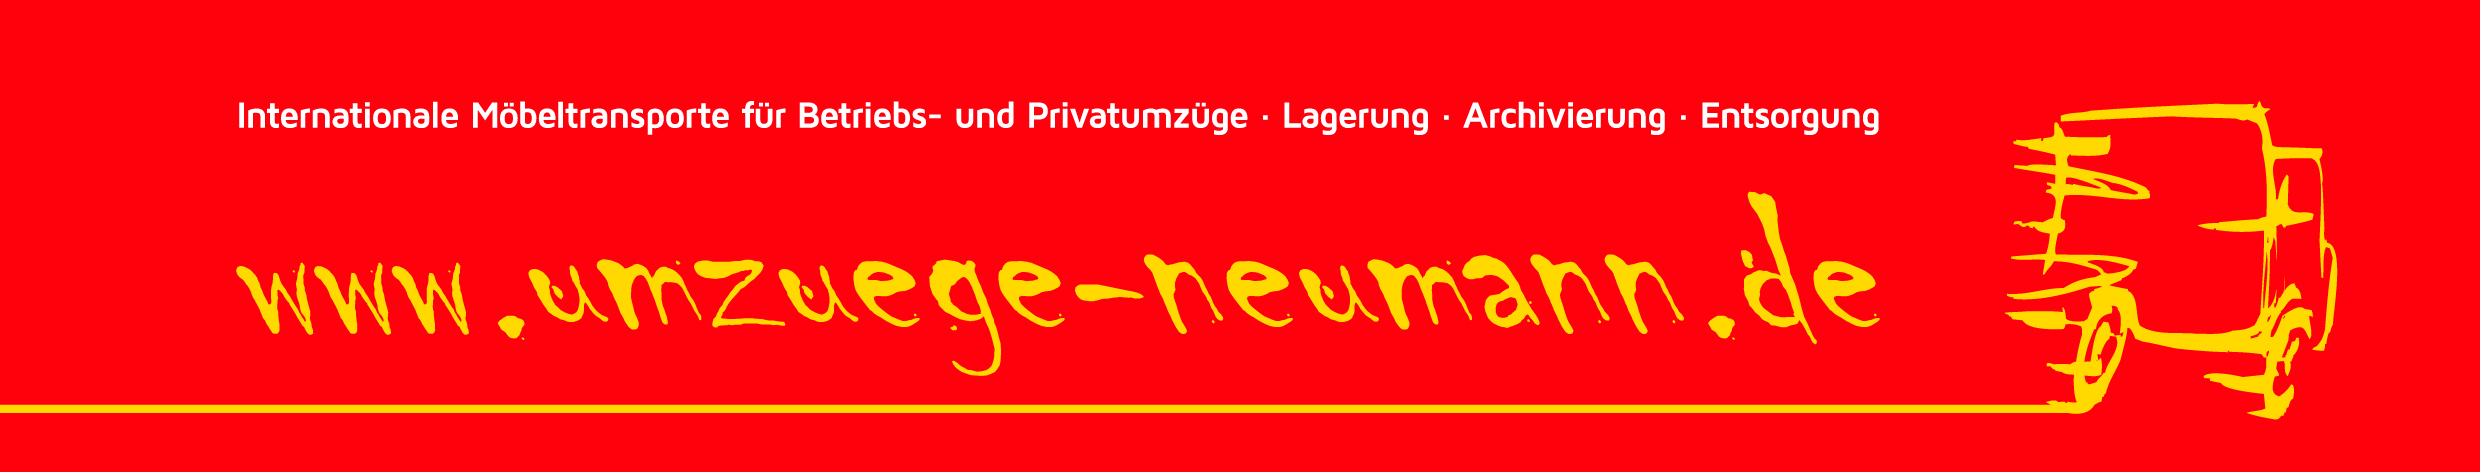 32eae8e13a7e54378bc7268ed477b19b_Neumann_Briefbogen_Head.jpg-logo